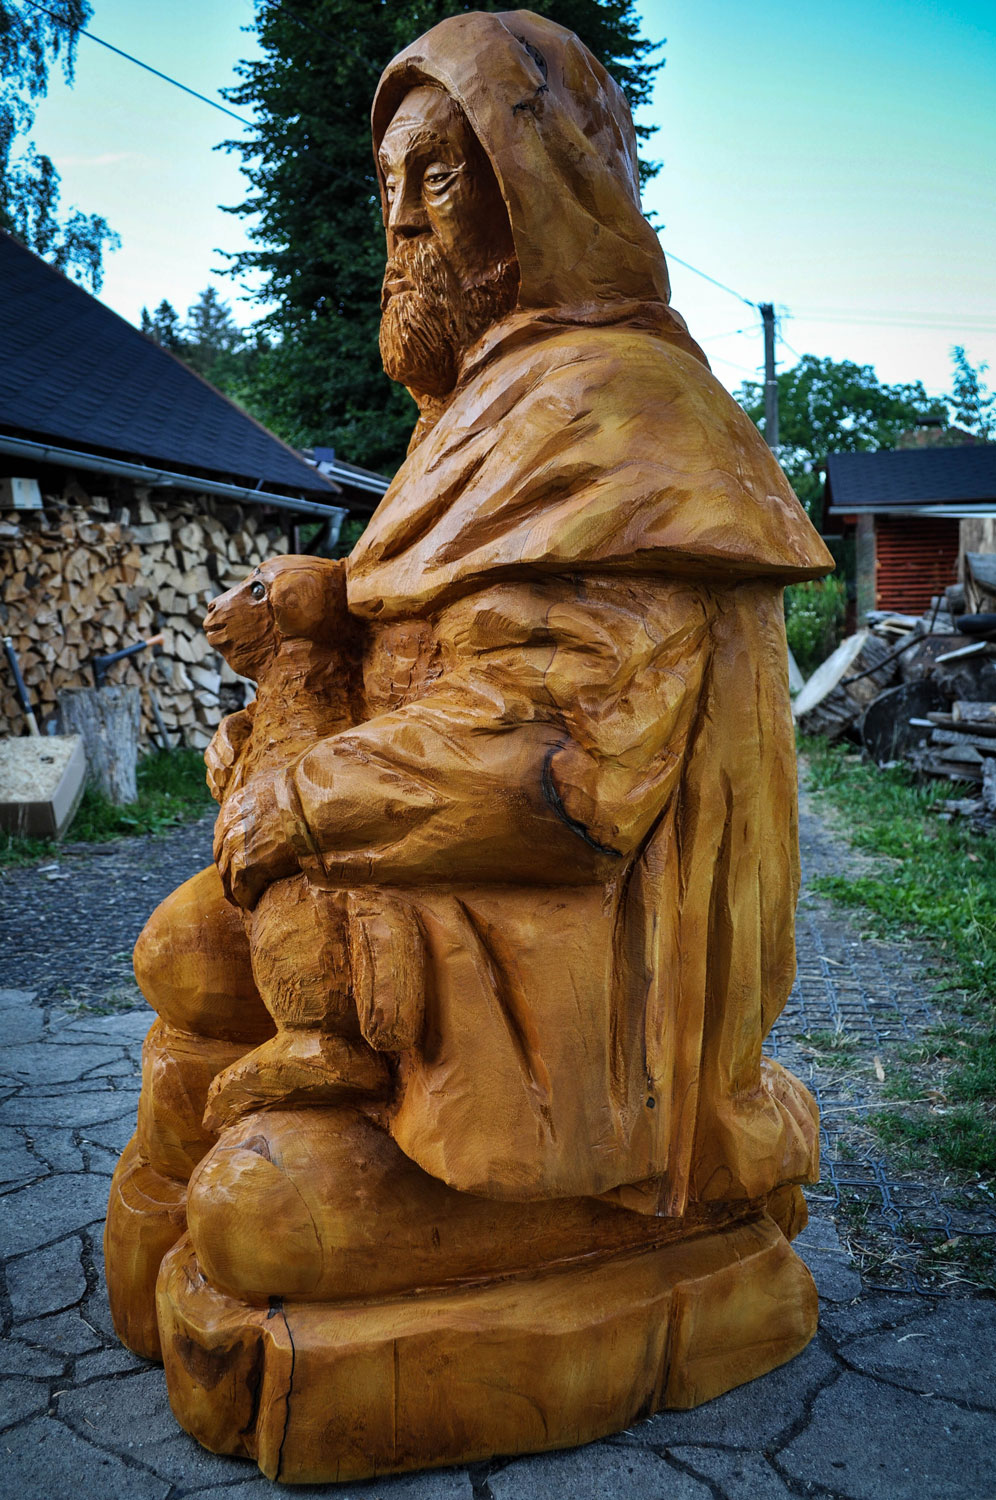 drevorezba-vyrezavani-carving-wood-drevo-socha-figura-betlem_pastyr-radekzdrazil-20220815-05